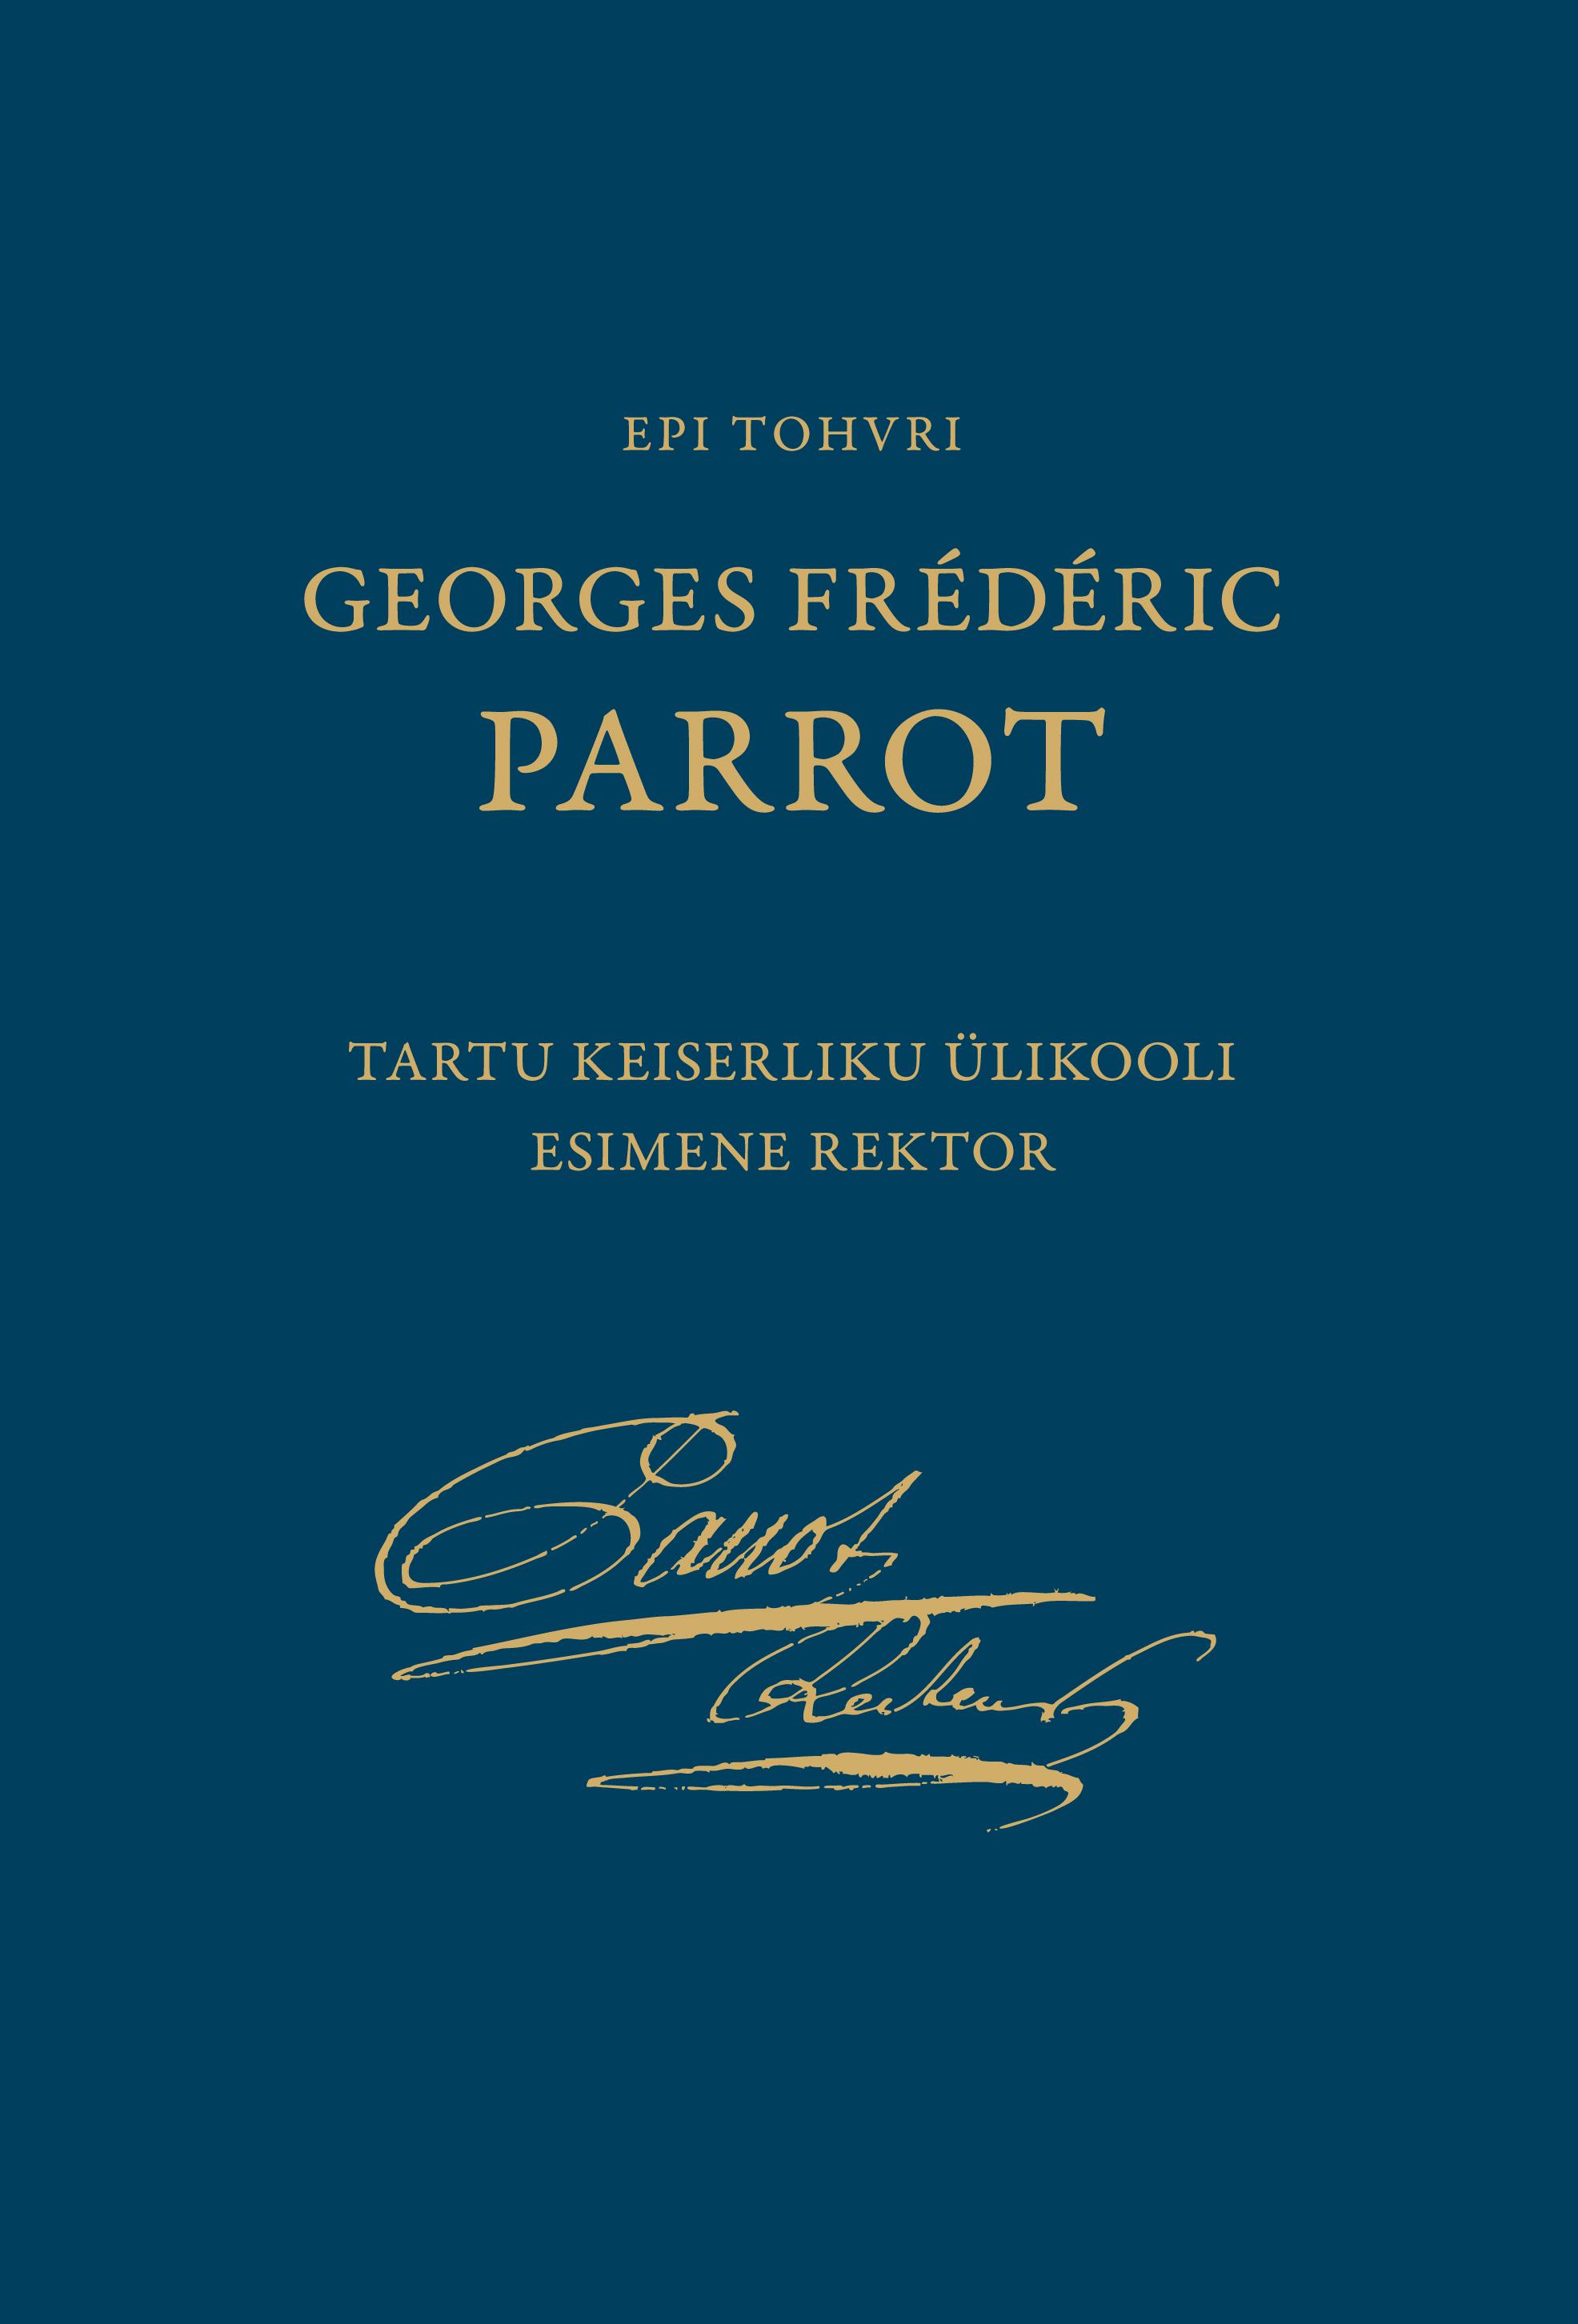 Georges Frederic Parrot: Tartu Keiserliku Ülikooli esimene rektor